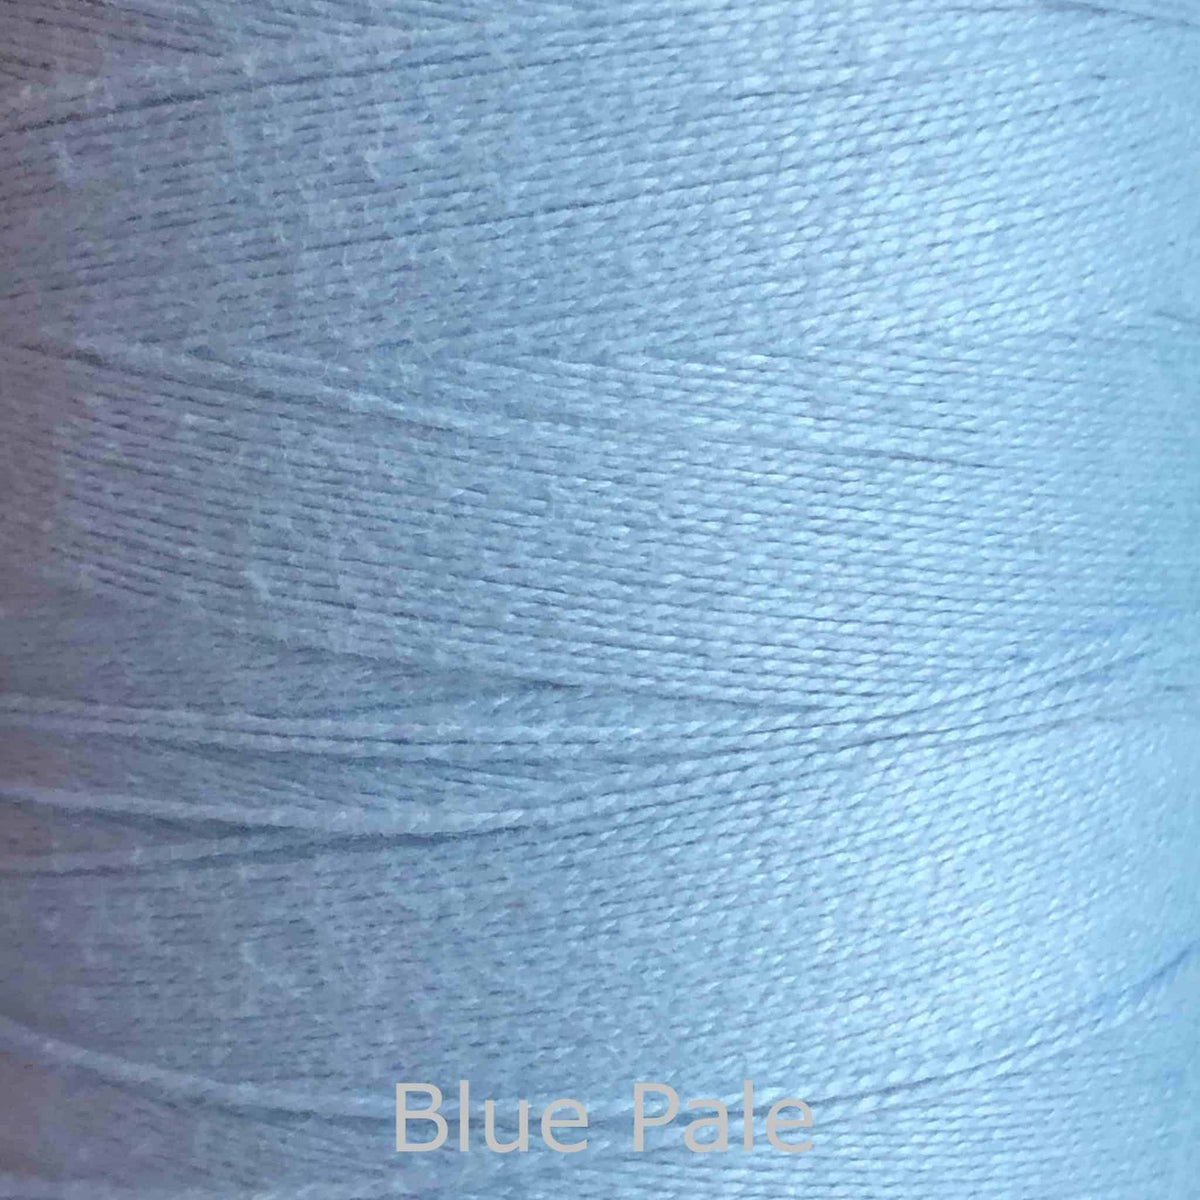 16/2 cotton weaving yarn blue pale